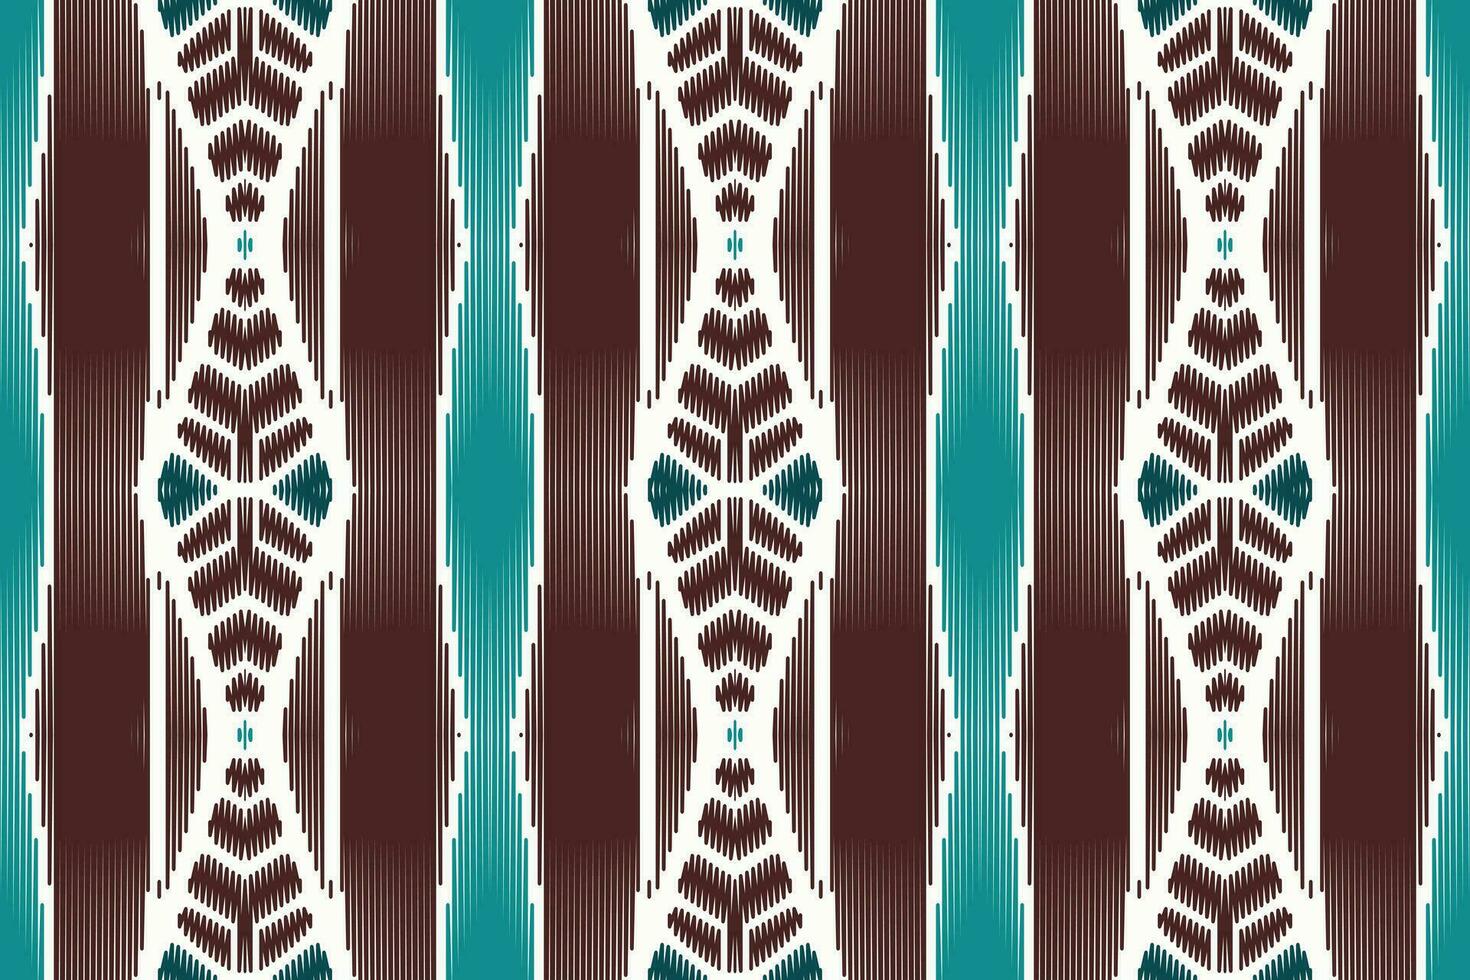 africain ikat floral paisley broderie sur blanc arrière-plan.géométrique ethnique Oriental modèle traditionnel.aztèque style abstrait vecteur illustration.design pour texture, tissu, vêtements, emballage, tapis.